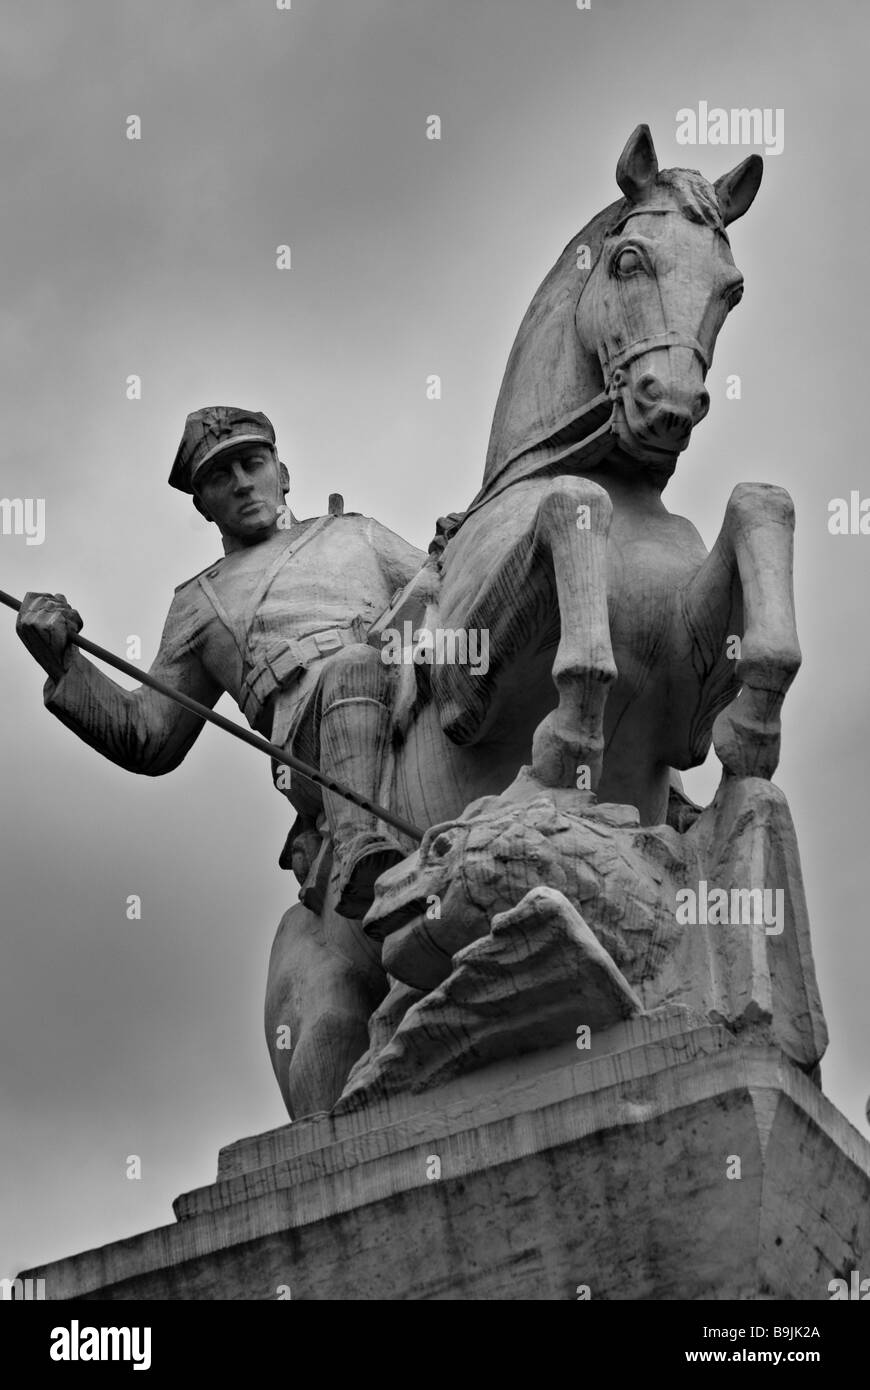 Un monumento estatua de Poznan (caballería Uhlans) muestra un soldado a caballo armado con una lanza, Poznan, Polonia Foto de stock